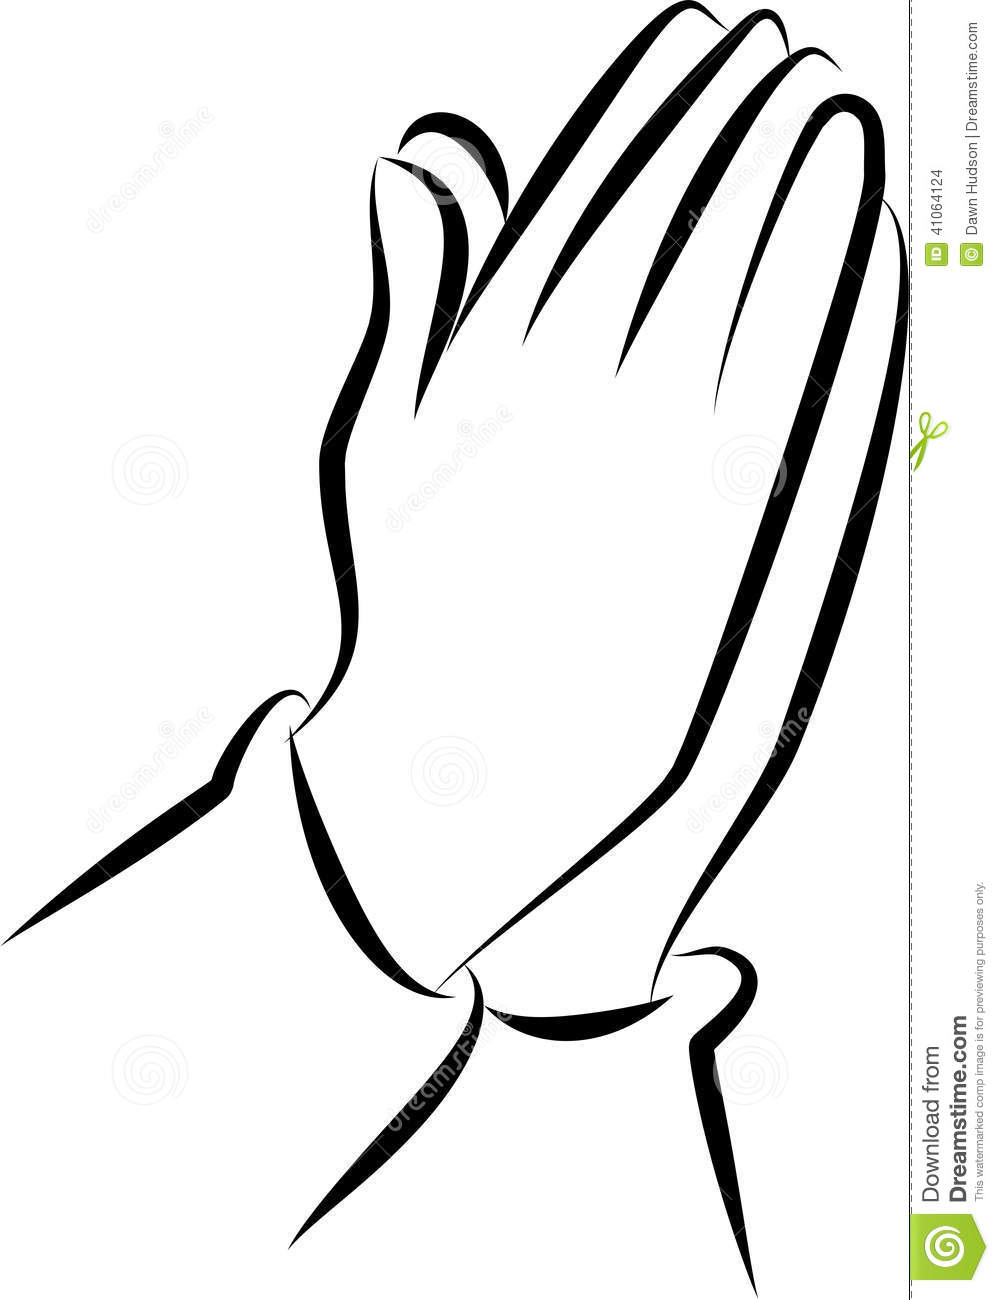 Praying hands clip art clipar